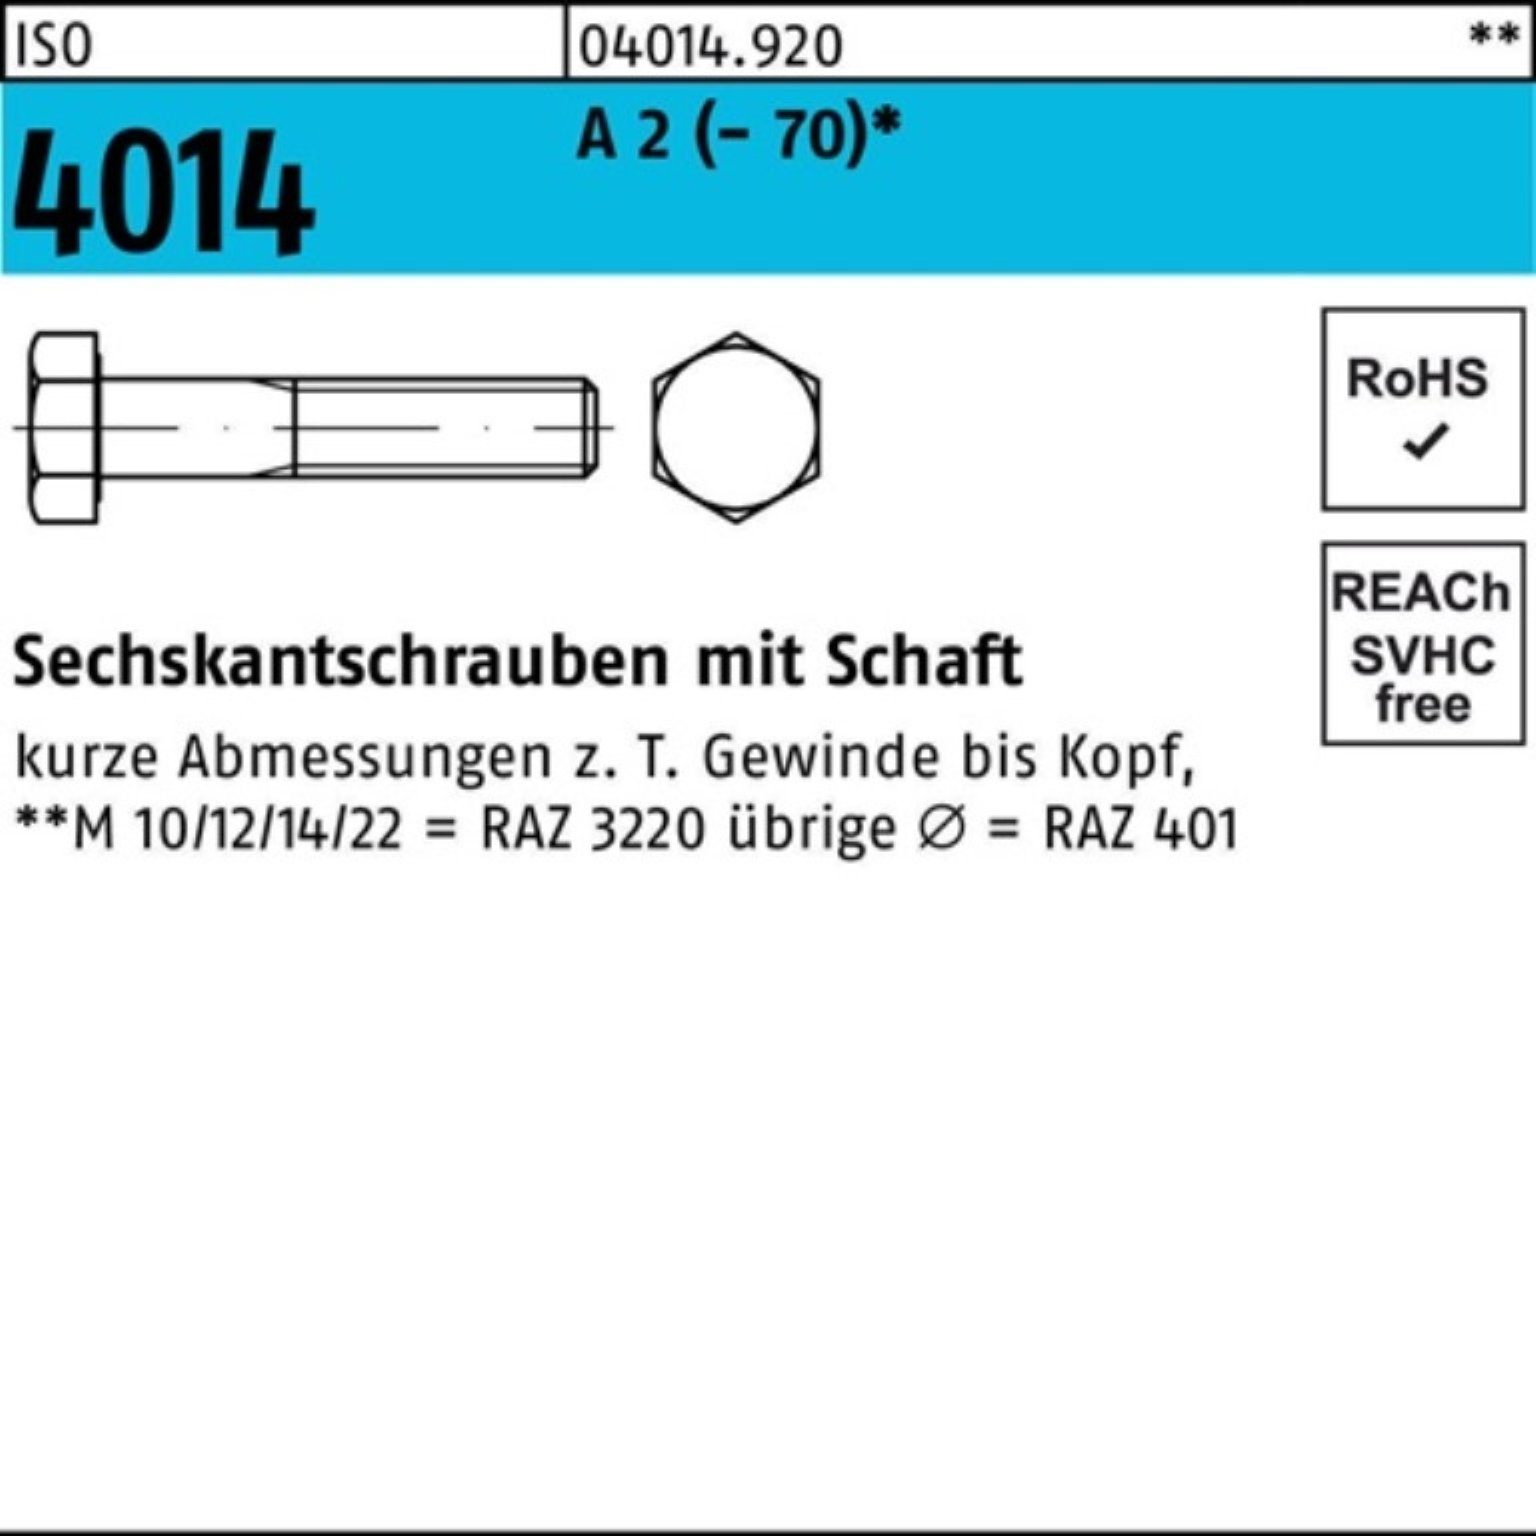 ISO Sechskantschraube St (70) 210 Sechskantschraube Pack Schaft Bufab 100er 4014 A 1 M24x 2